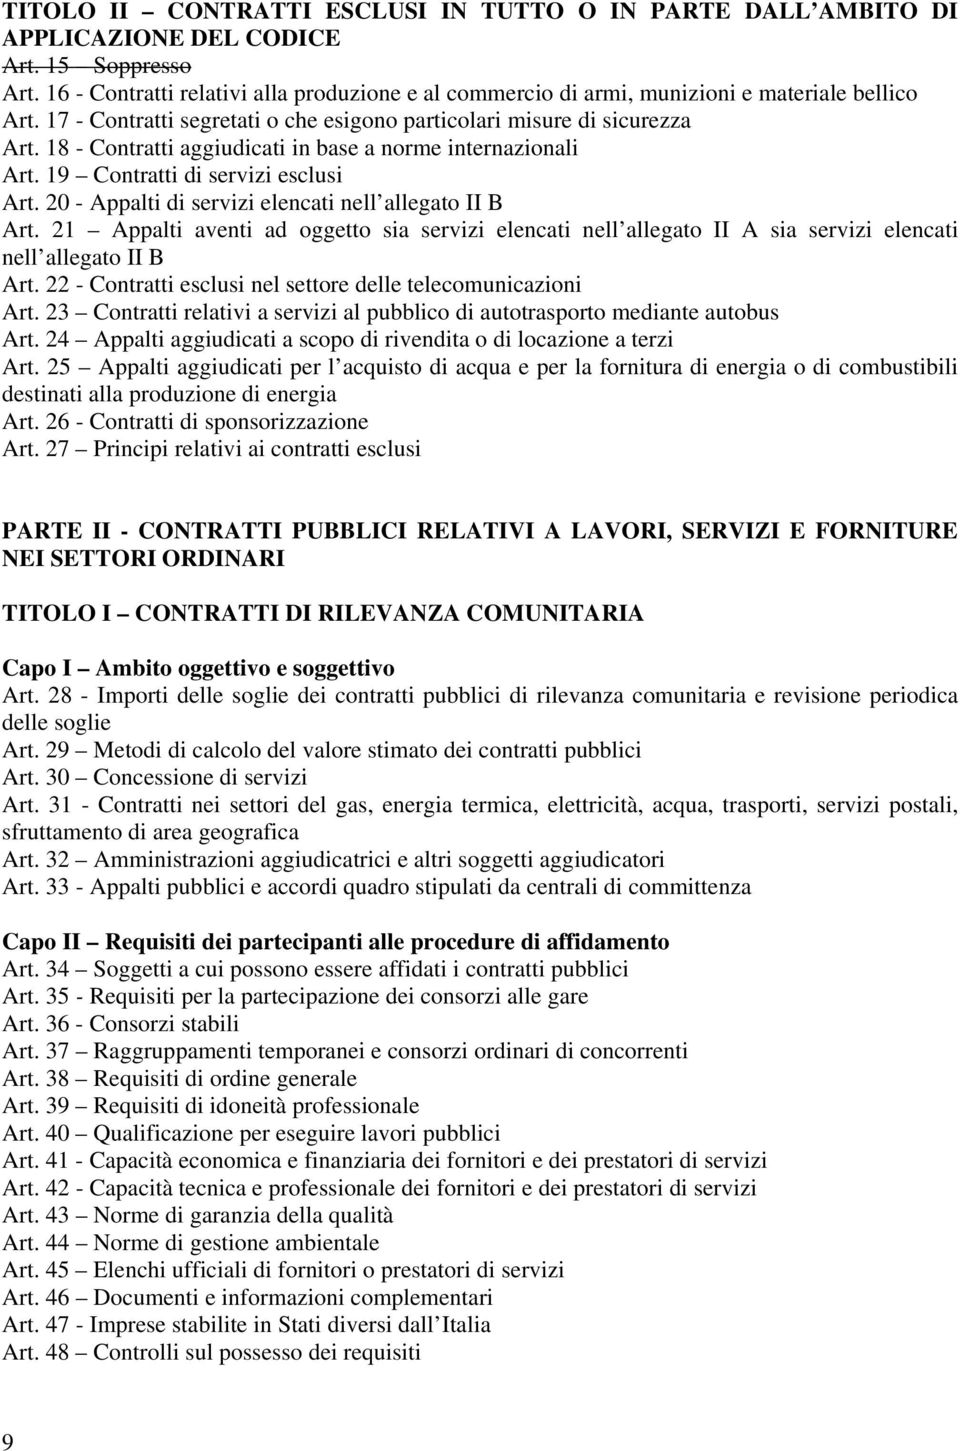 18 - Contratti aggiudicati in base a norme internazionali Art. 19 Contratti di servizi esclusi Art. 20 - Appalti di servizi elencati nell allegato II B Art.